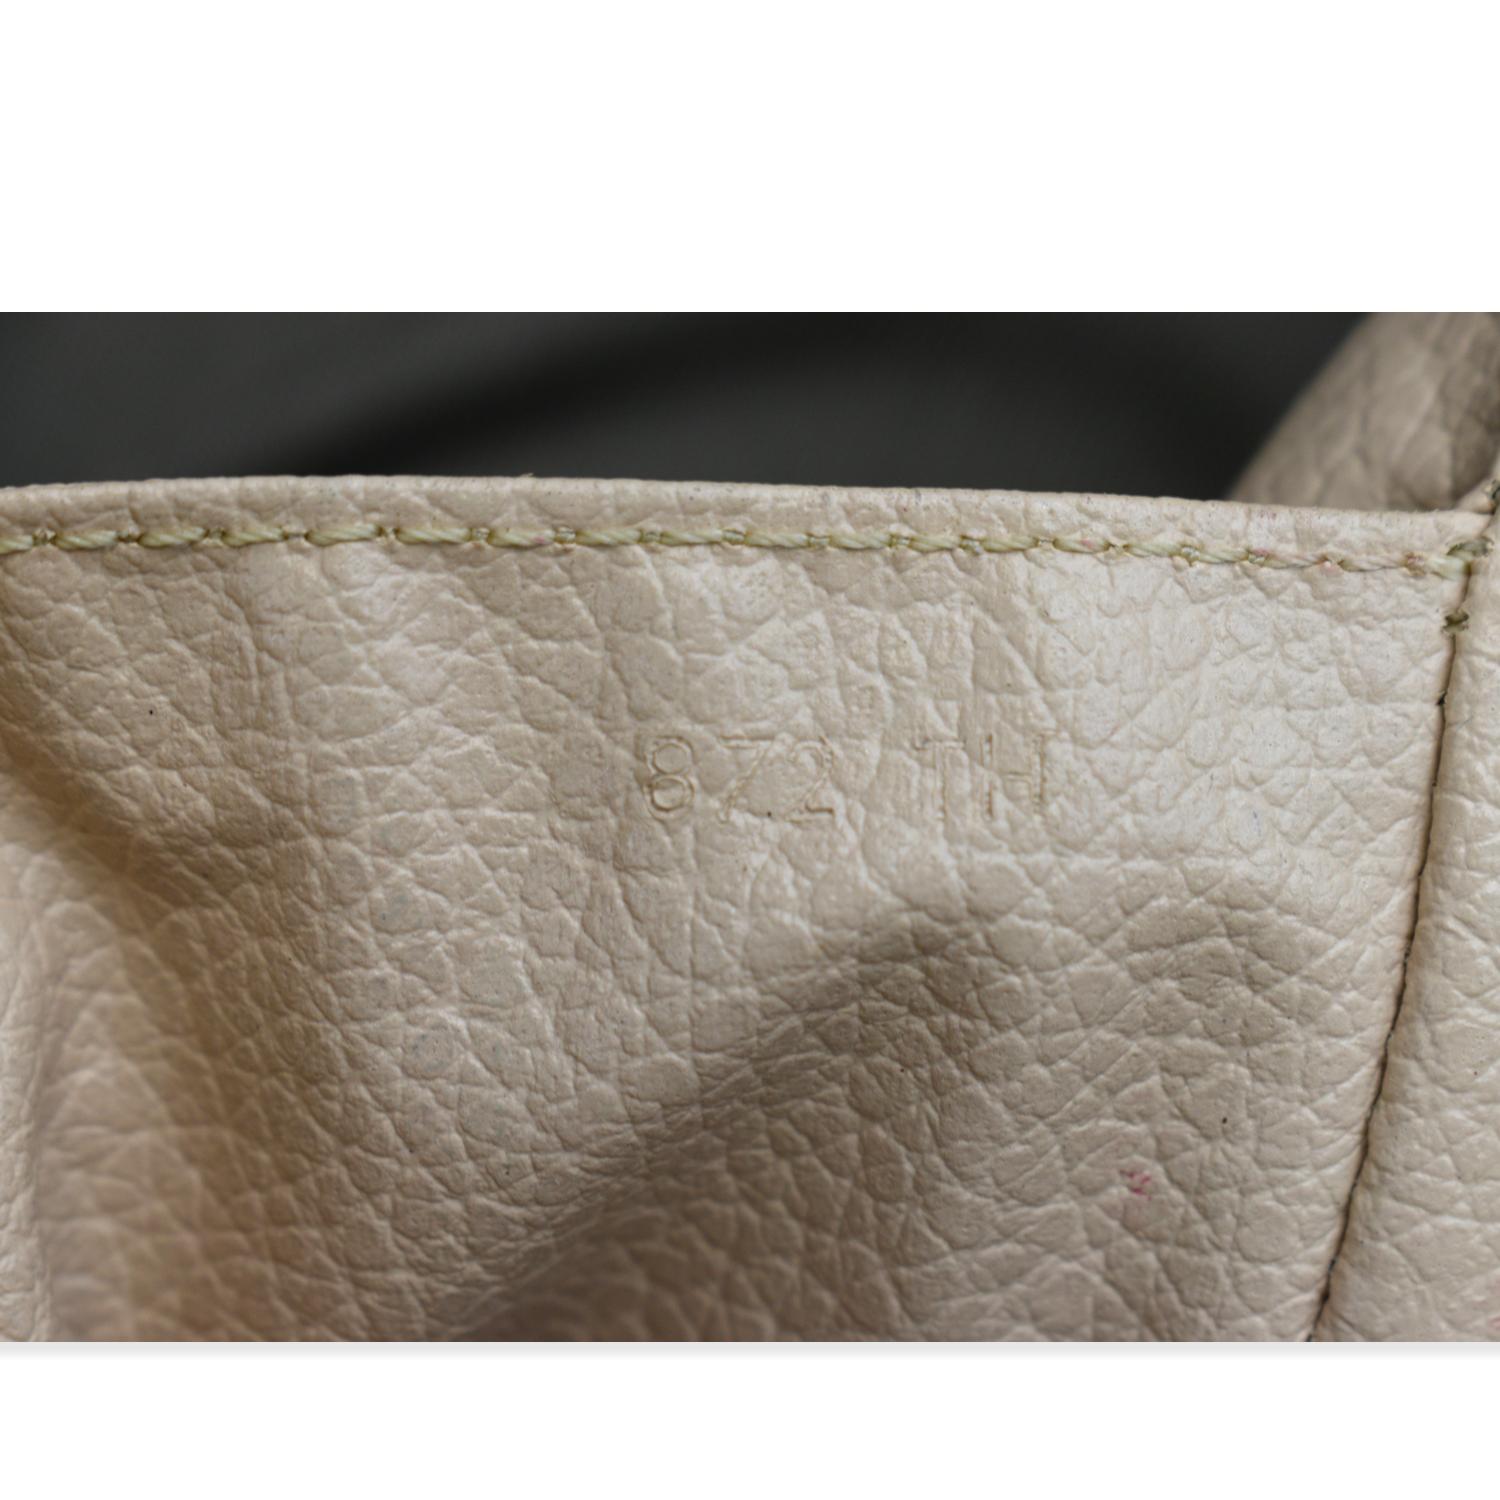 Louis Vuitton Trousse De Toilette Canvas Clutch Bag (pre-owned) in Metallic